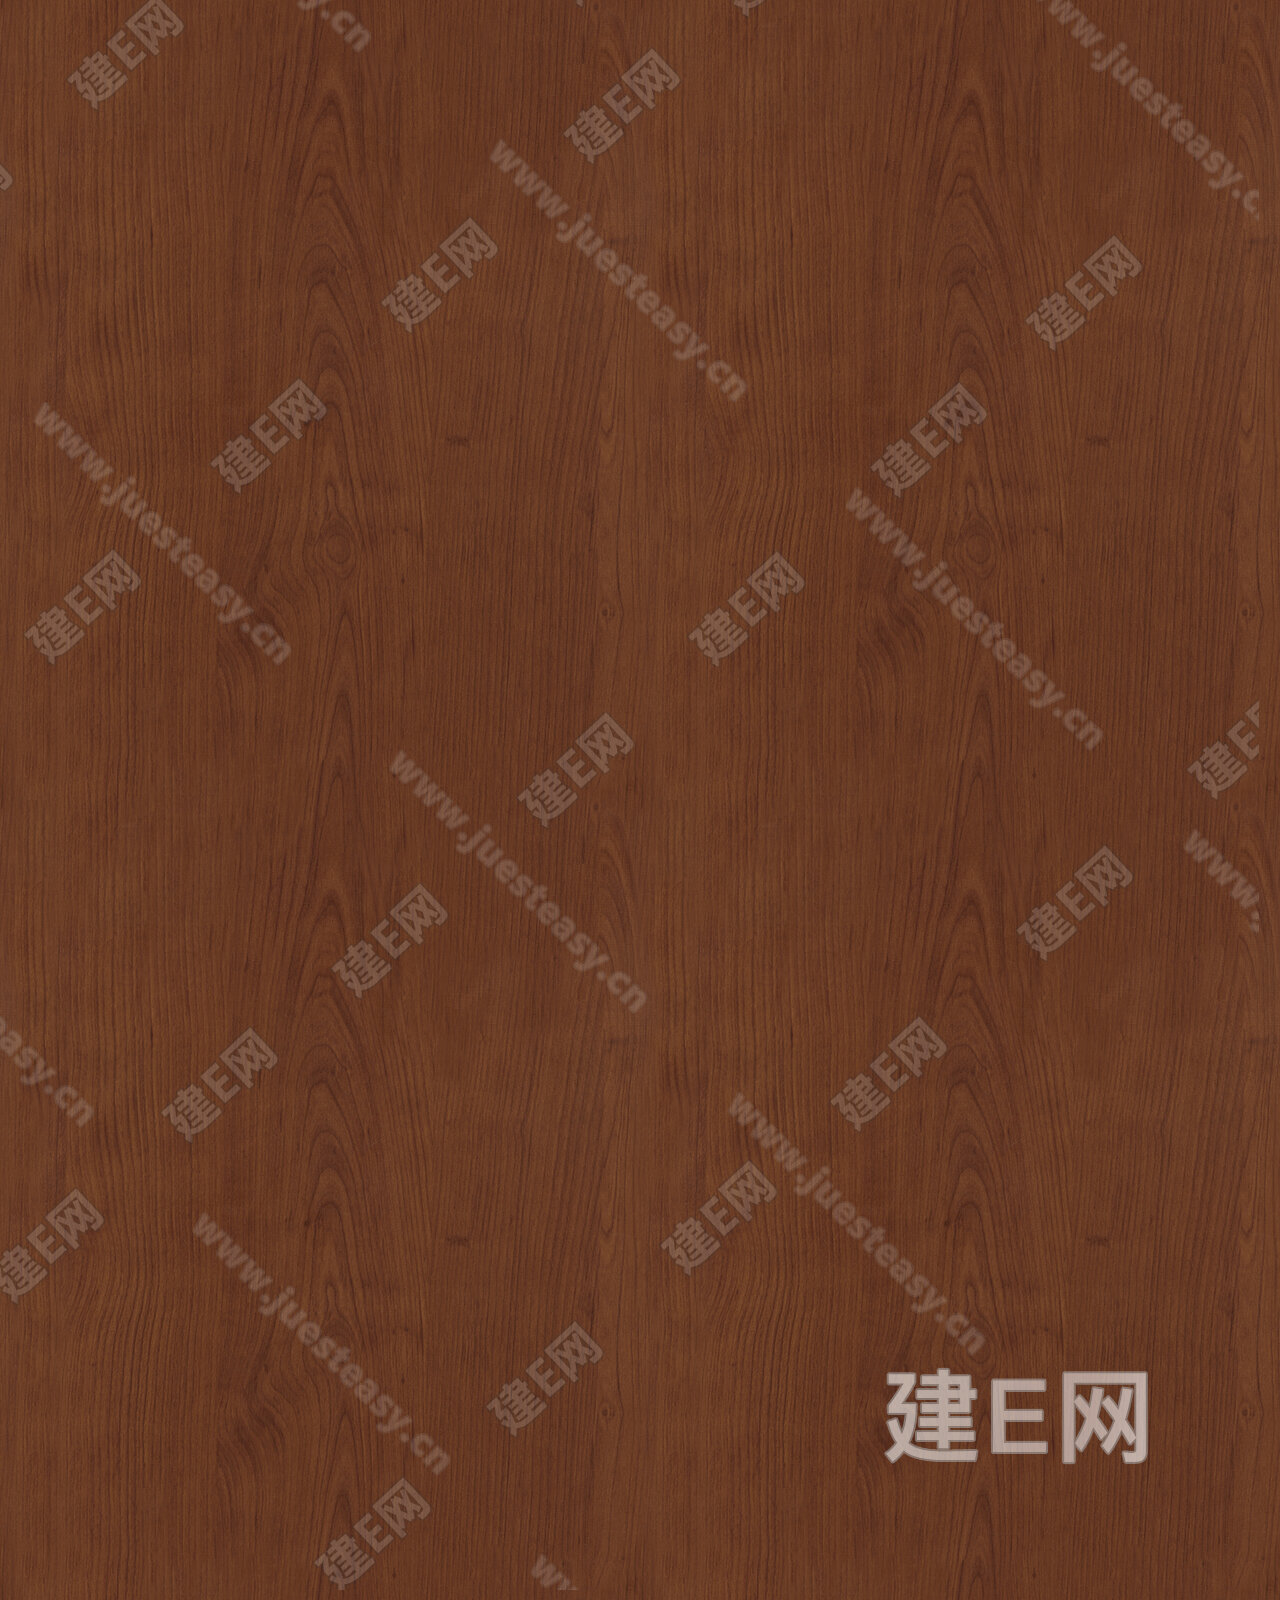 中式卧室樱桃木地板效果图 – 设计本装修效果图